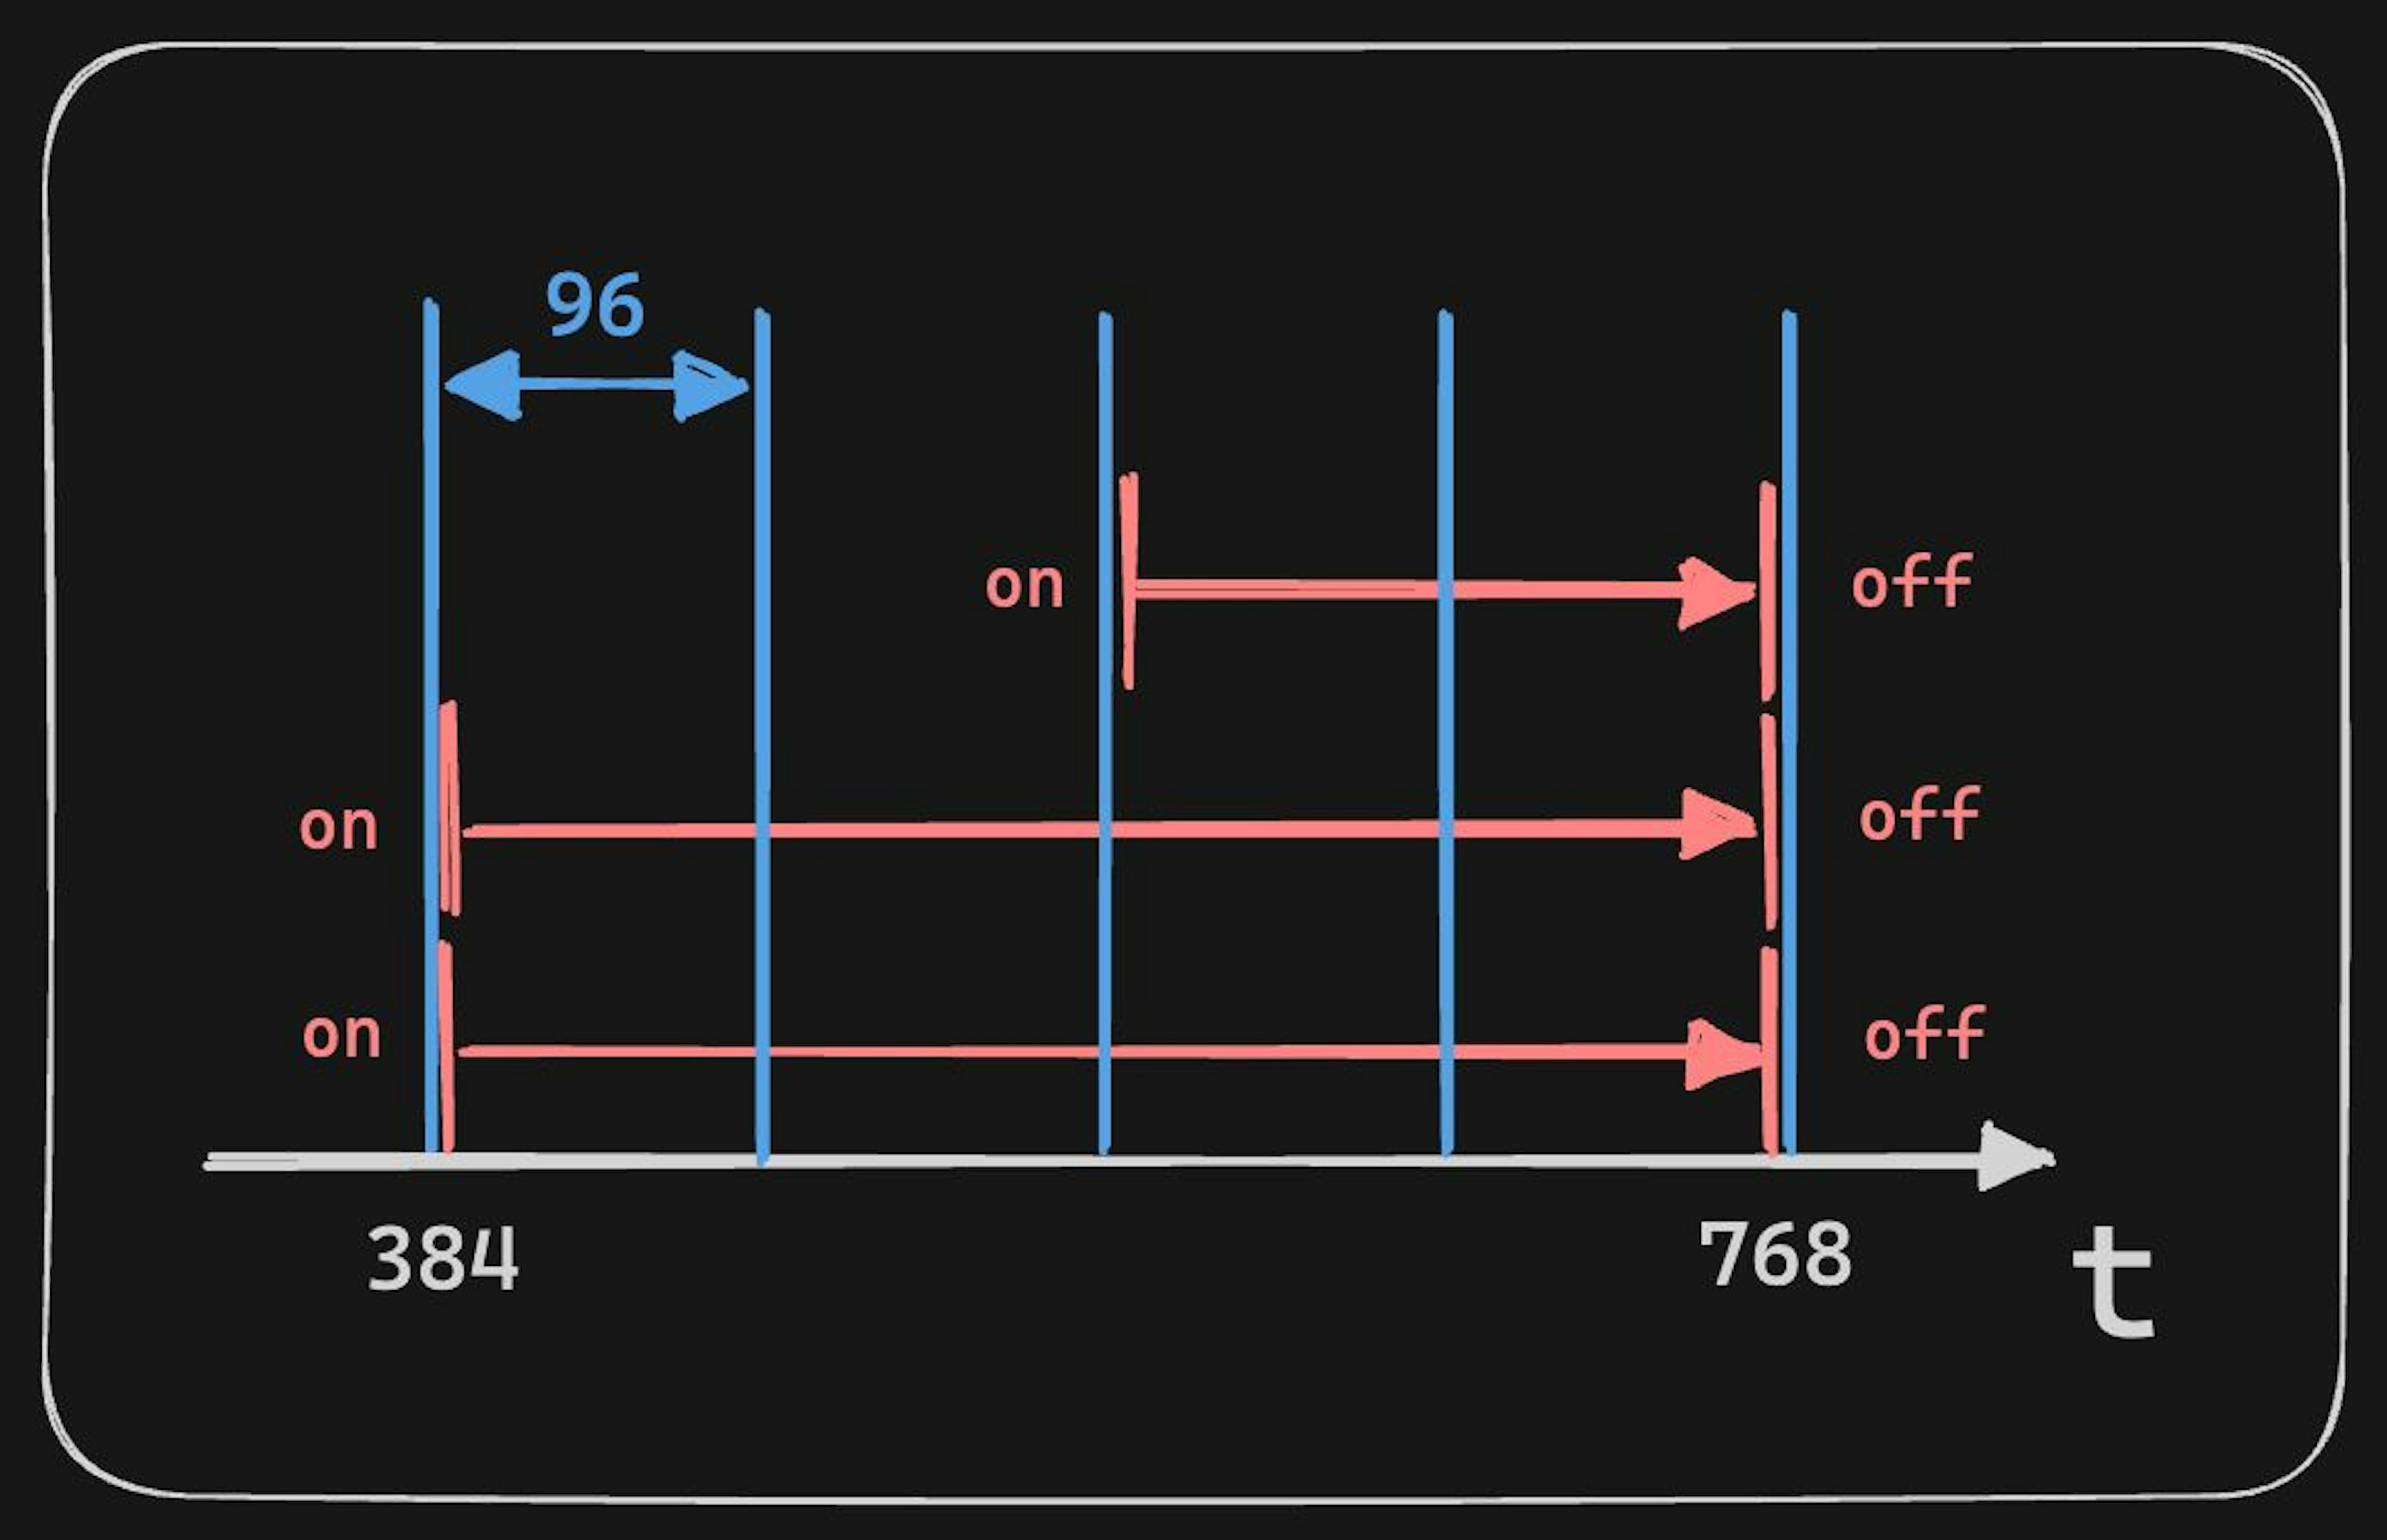 蓝色 - 节拍（默认长度为 96 节拍），红色 - 音符事件